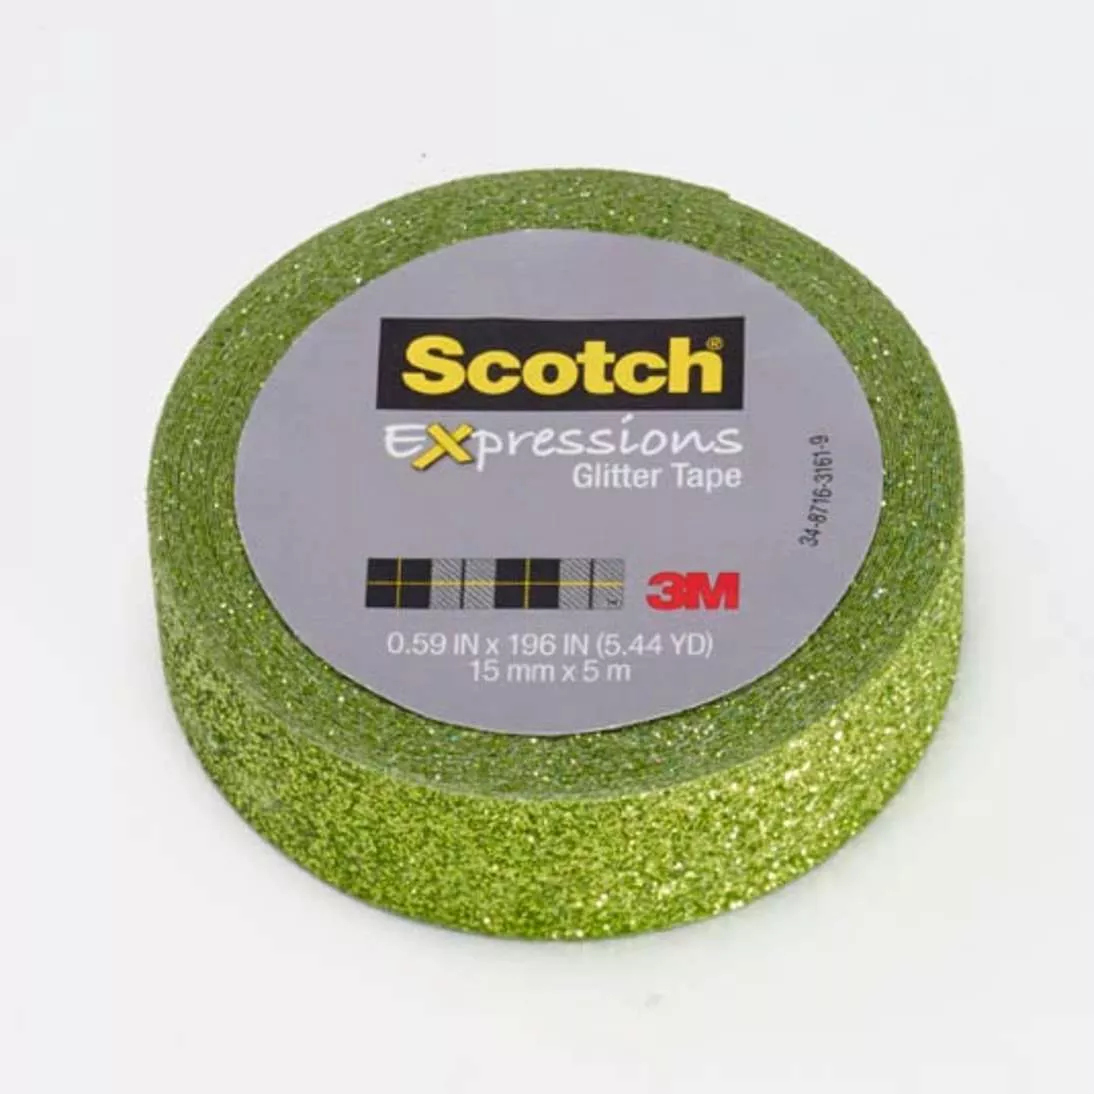 Scotch® Expressions Glitter Tape C514-GRN, .59 in x 196 in (15 mm x 5 m)
Lime Green Glitter